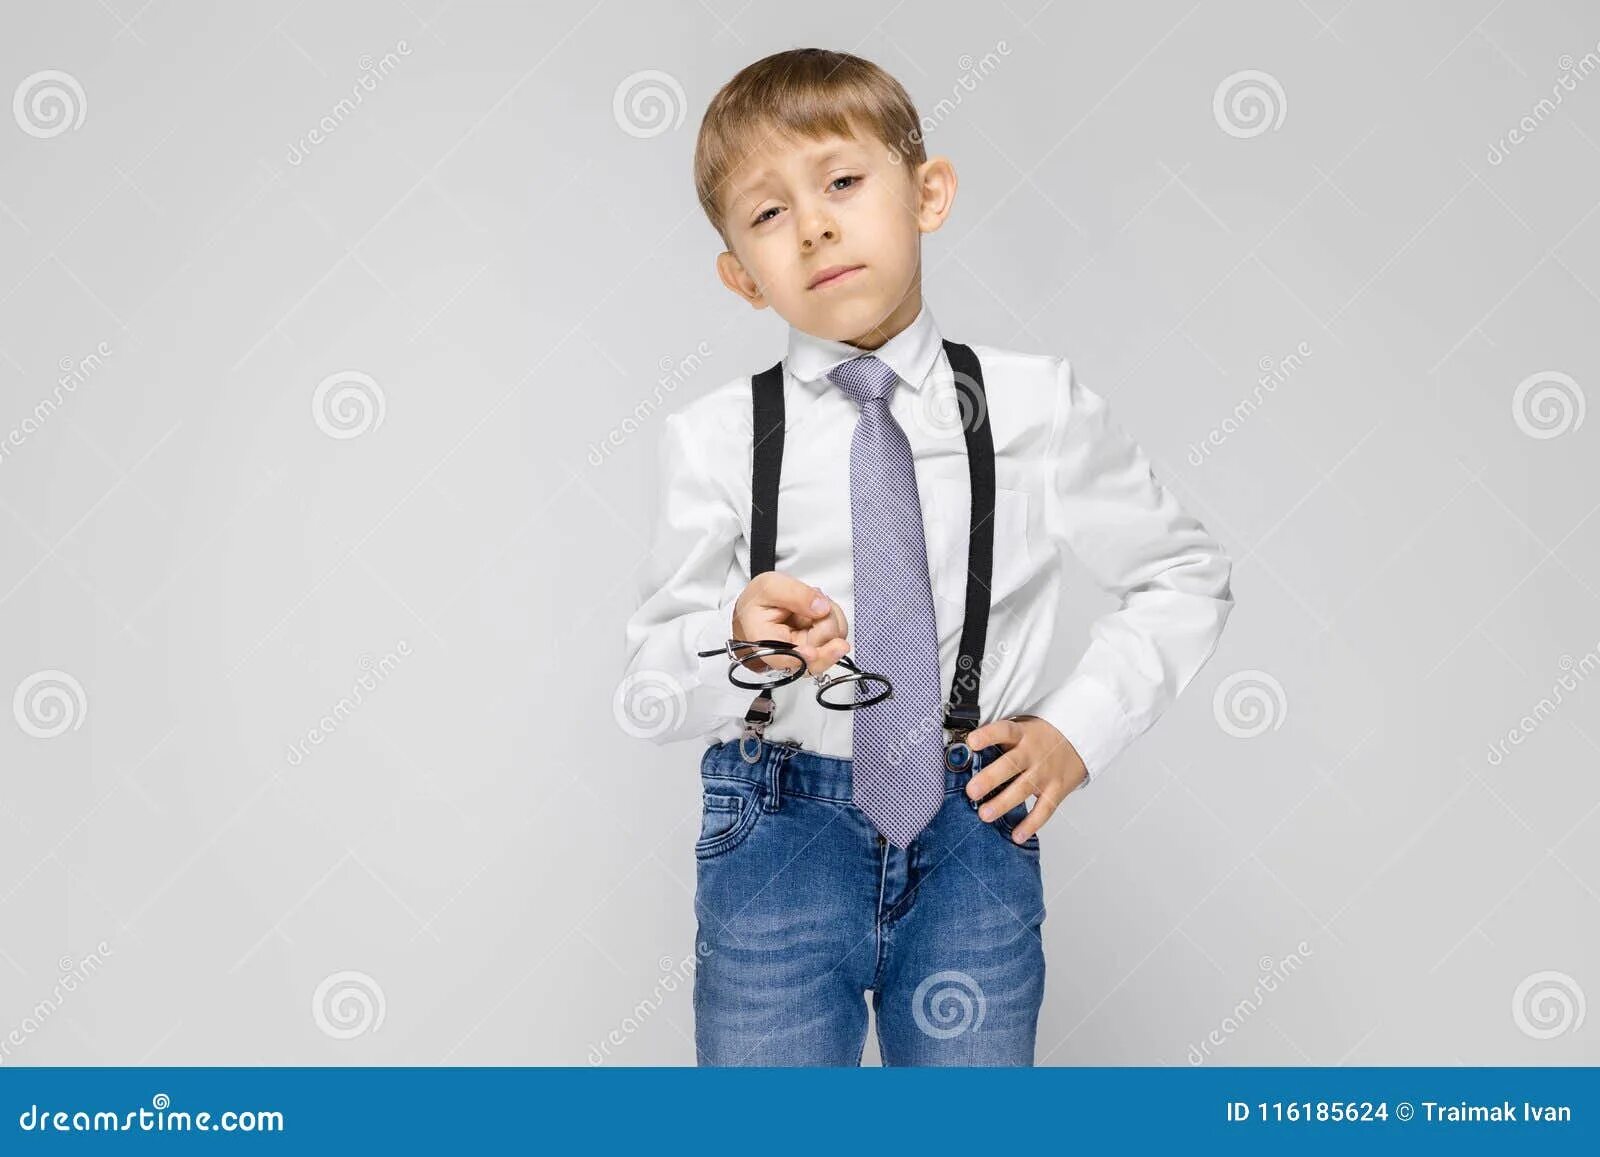 Мальчик в рубашке с галстуком. Галстук для мальчика. Мальчик в джинсах и рубашке. Школьник в галстуке. Произведение мальчик в белой рубашке